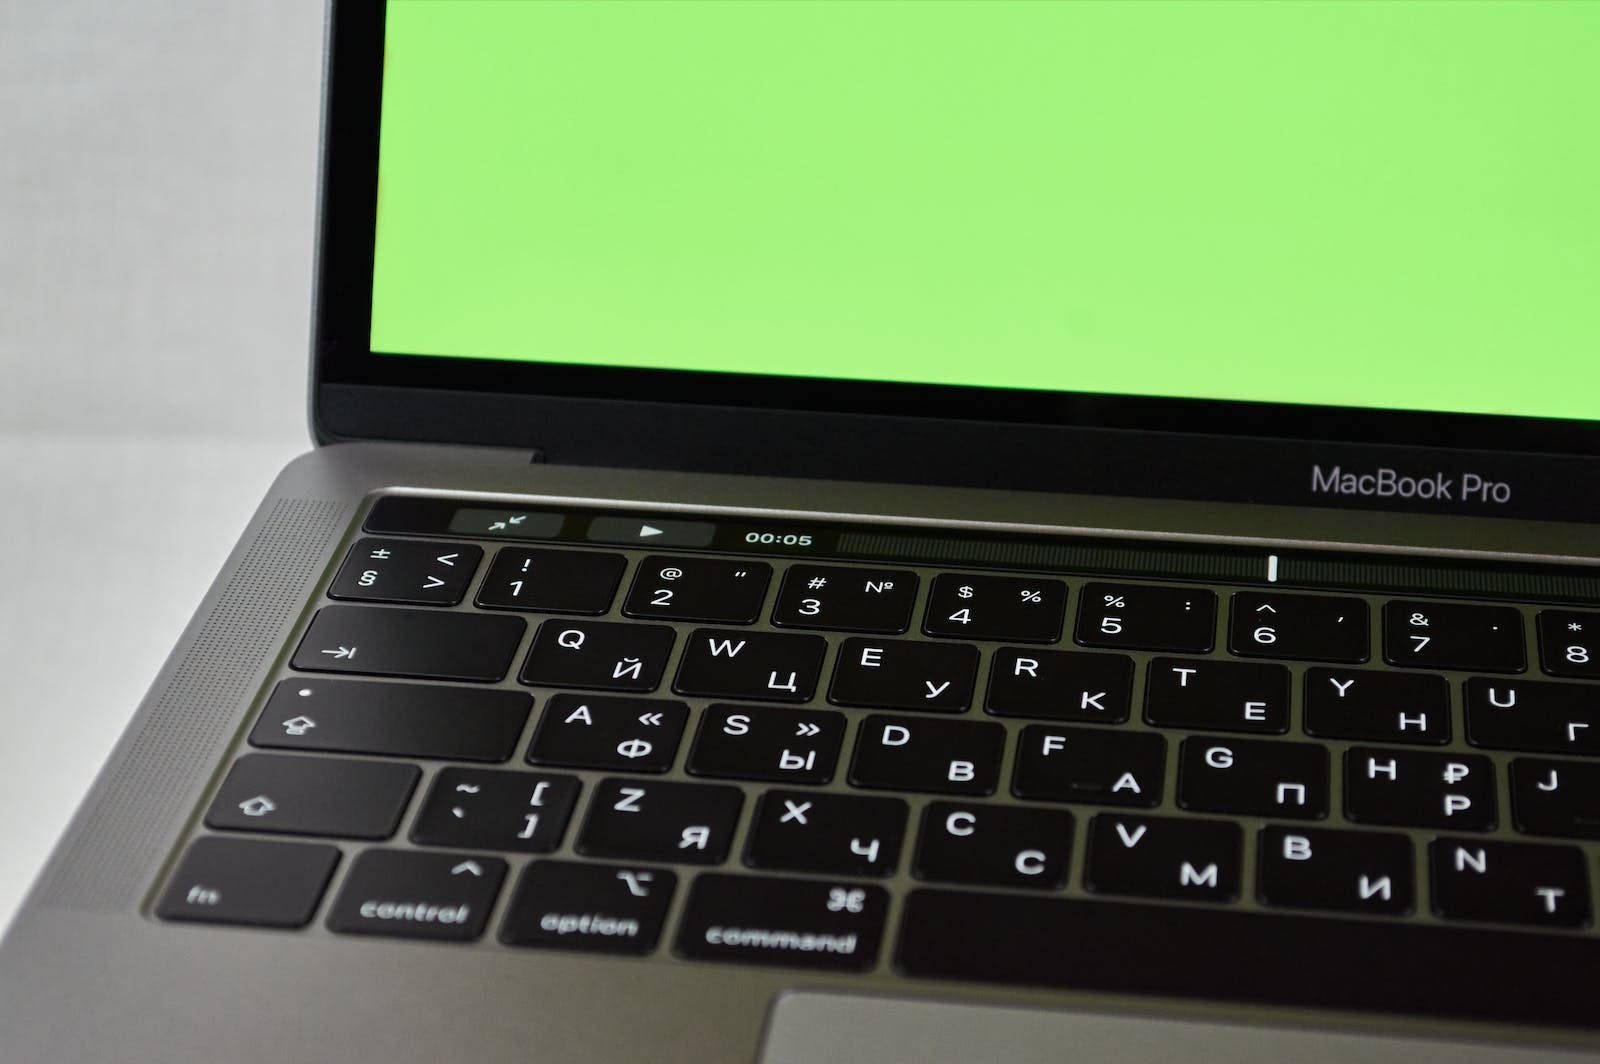 Macbook On A Green Screen Wallpaper